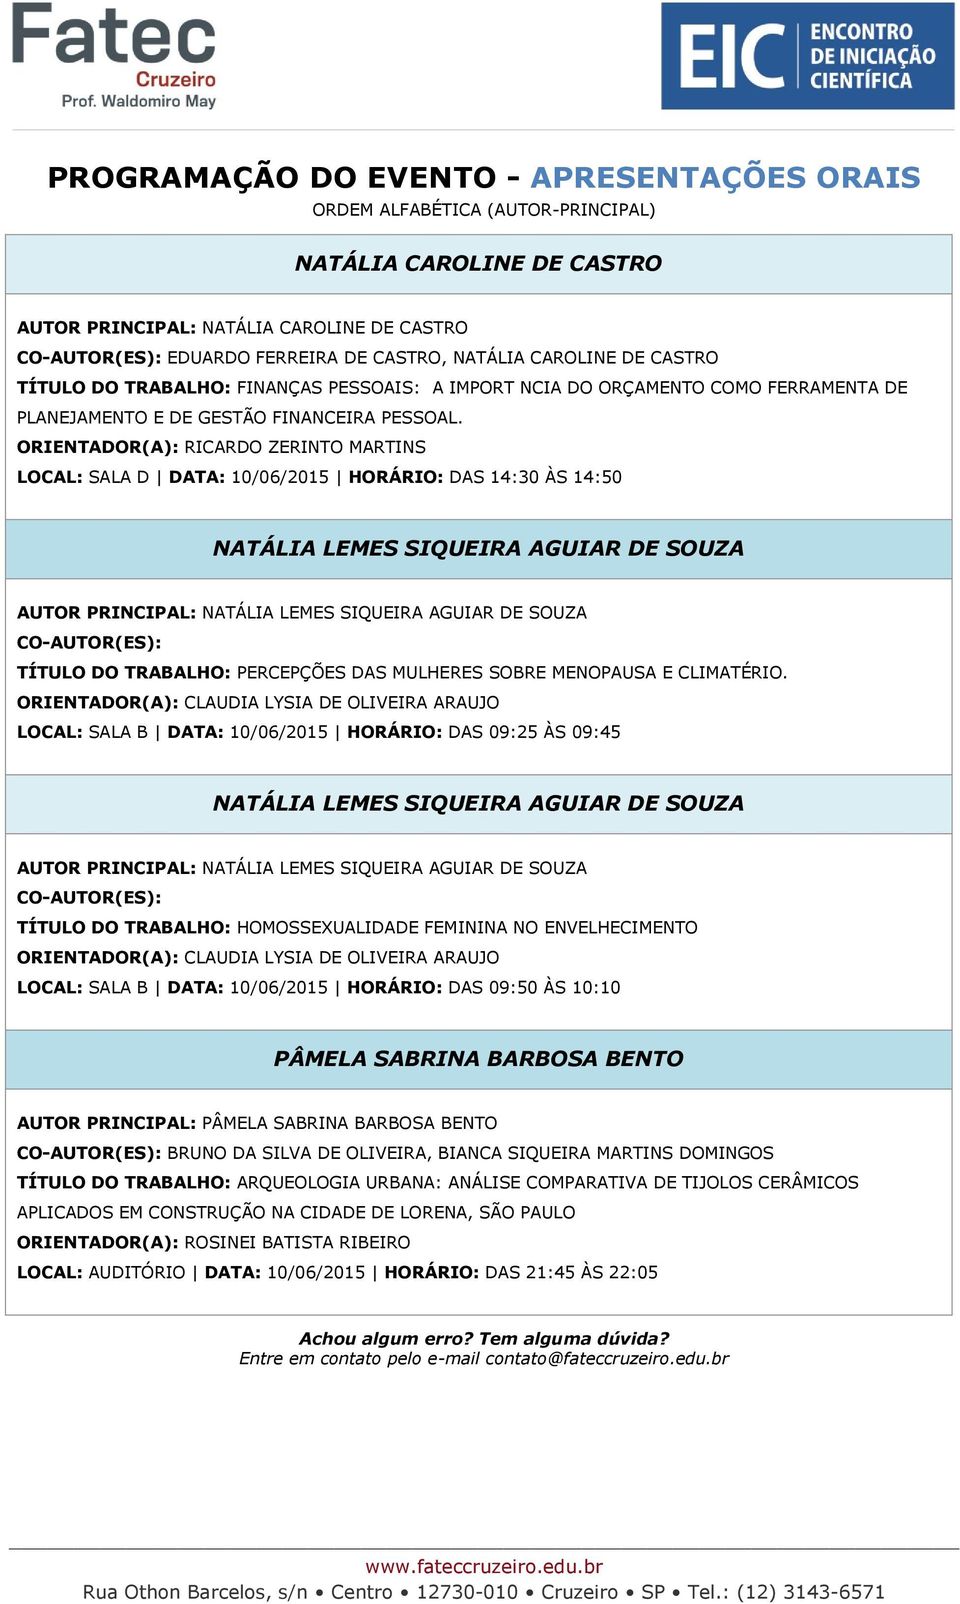 ORIENTADOR(A): RICARDO ZERINTO MARTINS LOCAL: SALA D DATA: 10/06/2015 HORÁRIO: DAS 14:30 ÀS 14:50 NATÁLIA LEMES SIQUEIRA AGUIAR DE SOUZA AUTOR PRINCIPAL: NATÁLIA LEMES SIQUEIRA AGUIAR DE SOUZA TÍTULO